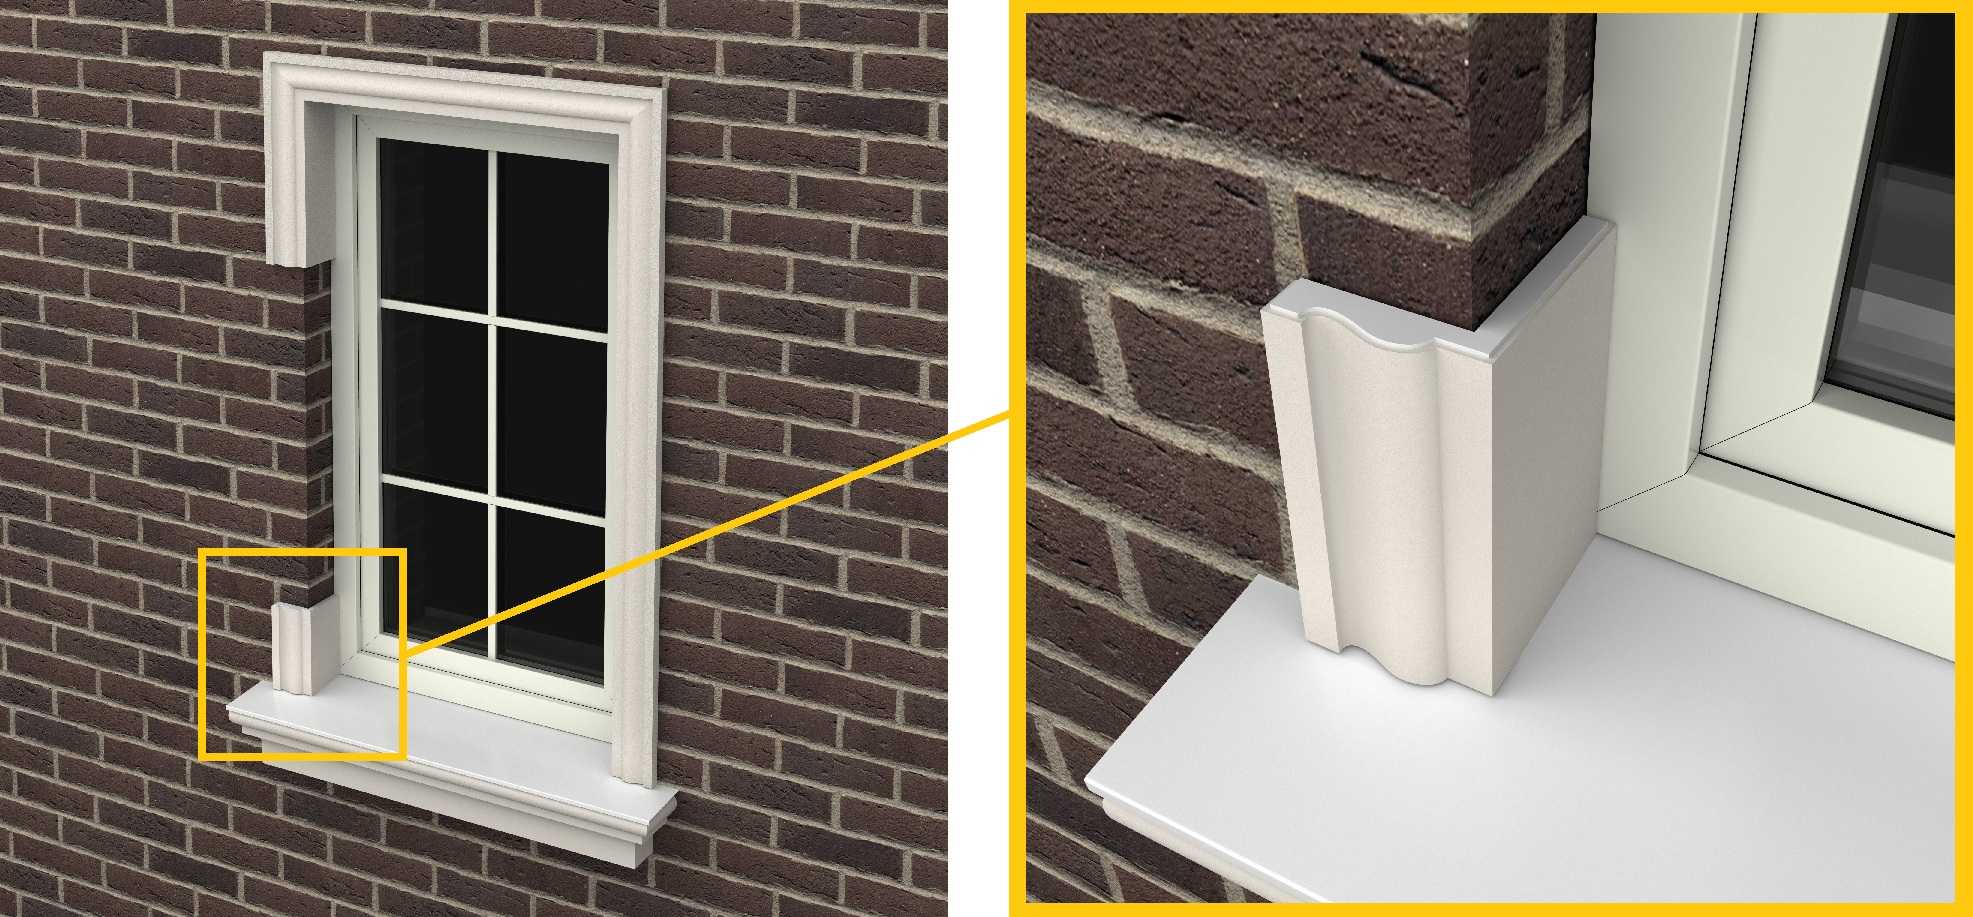 Герметик для уплотнения окон: когда нужно герметизировать окна, что собой представляет средство